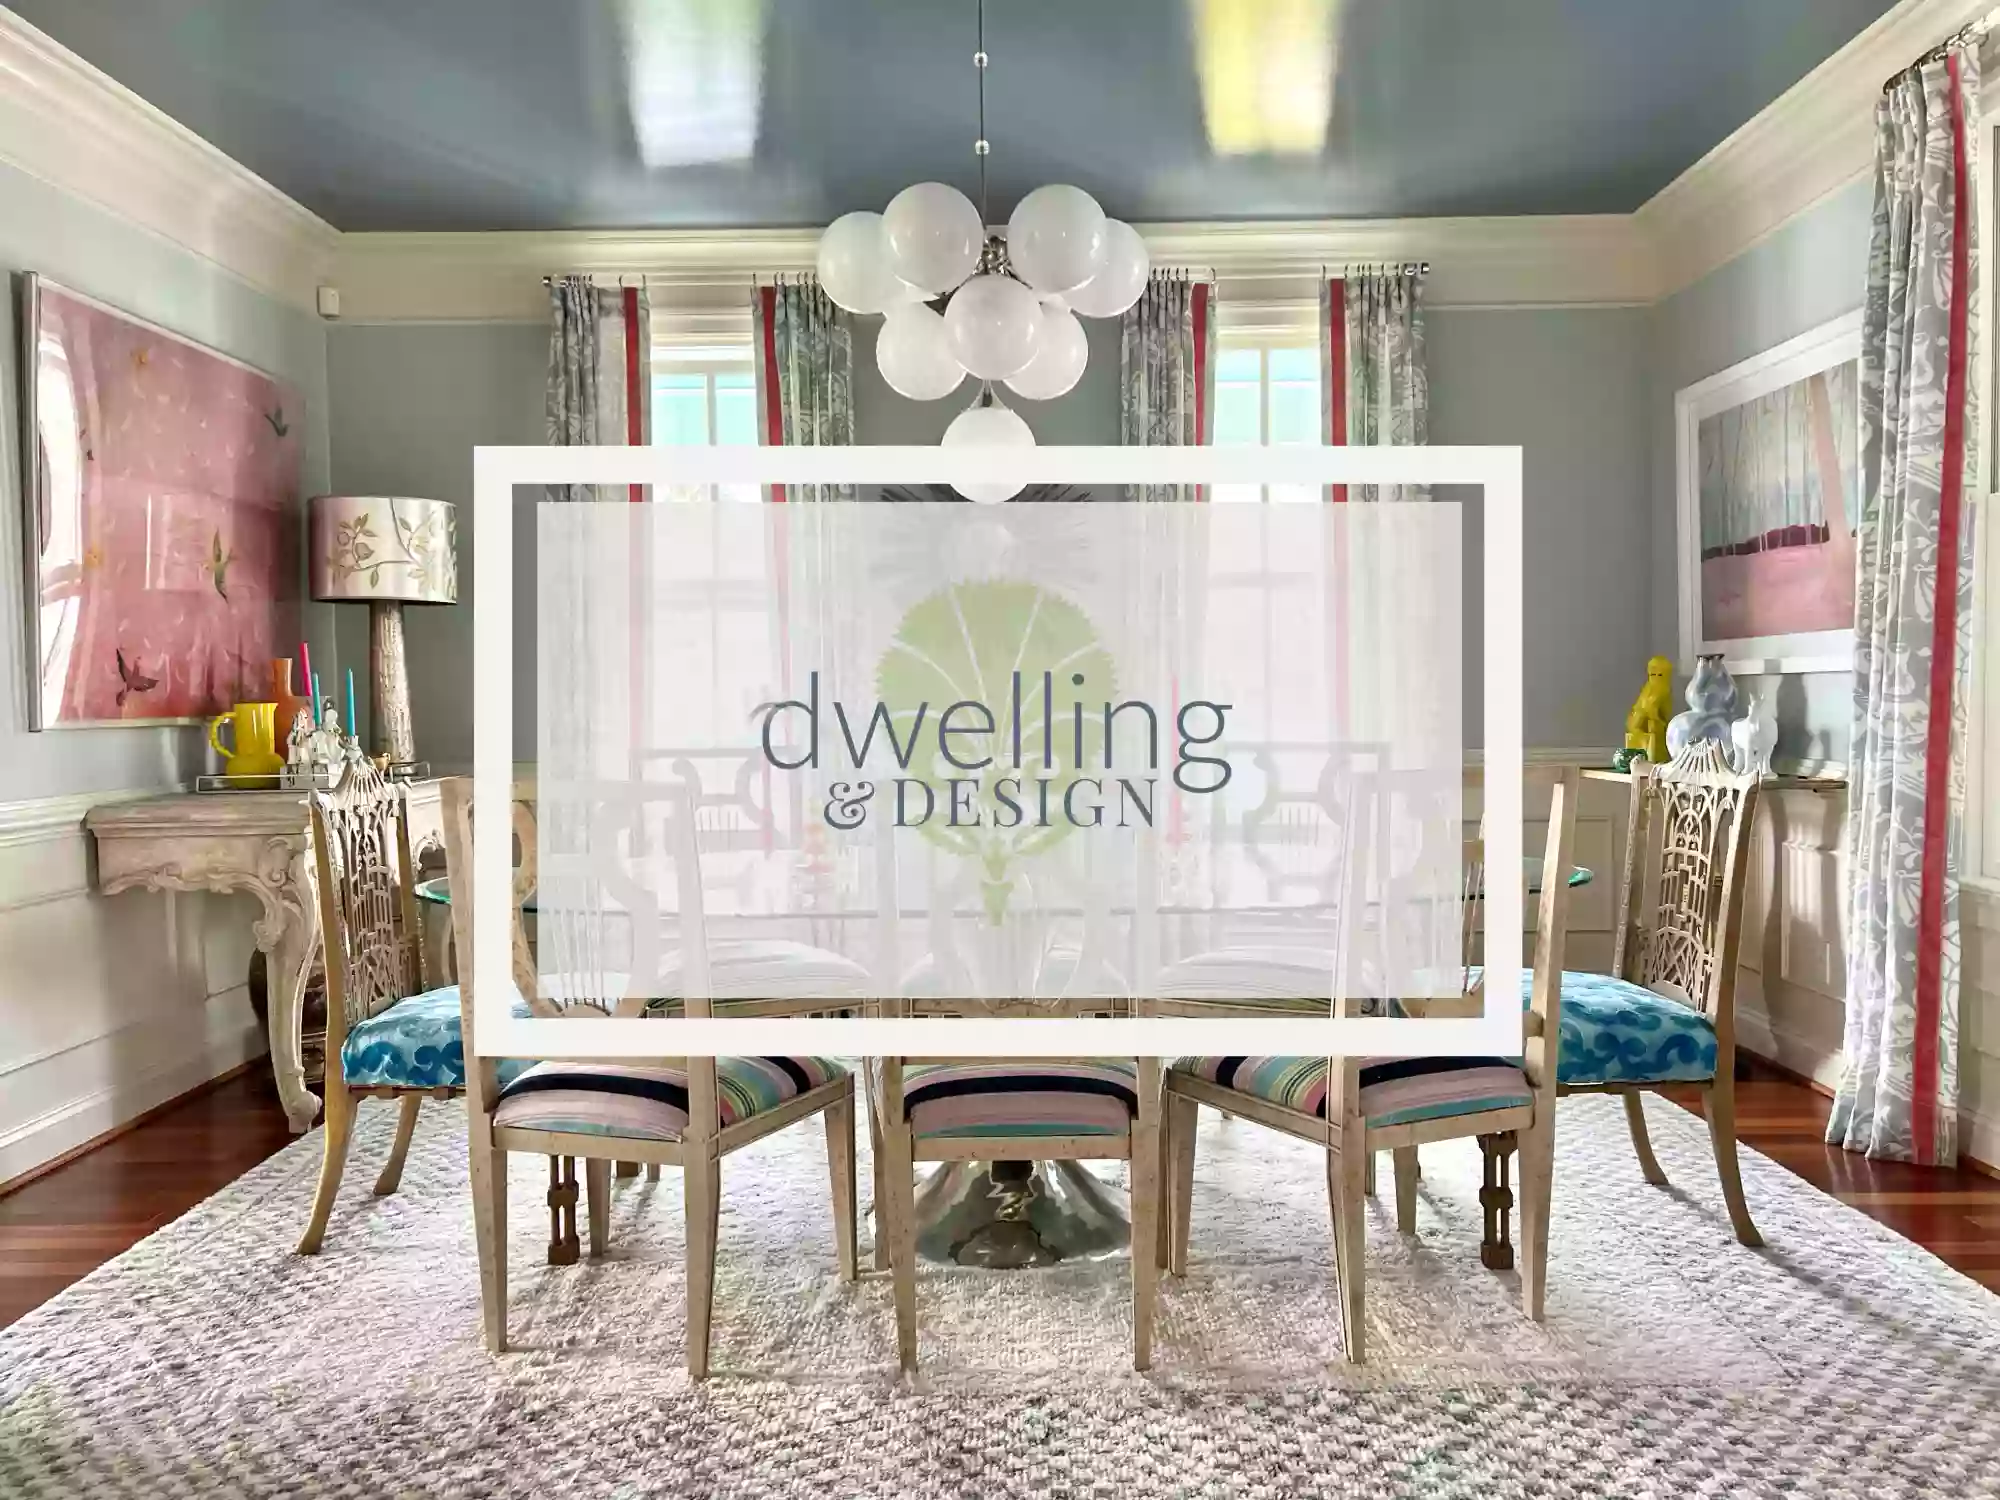 Dwelling & Design